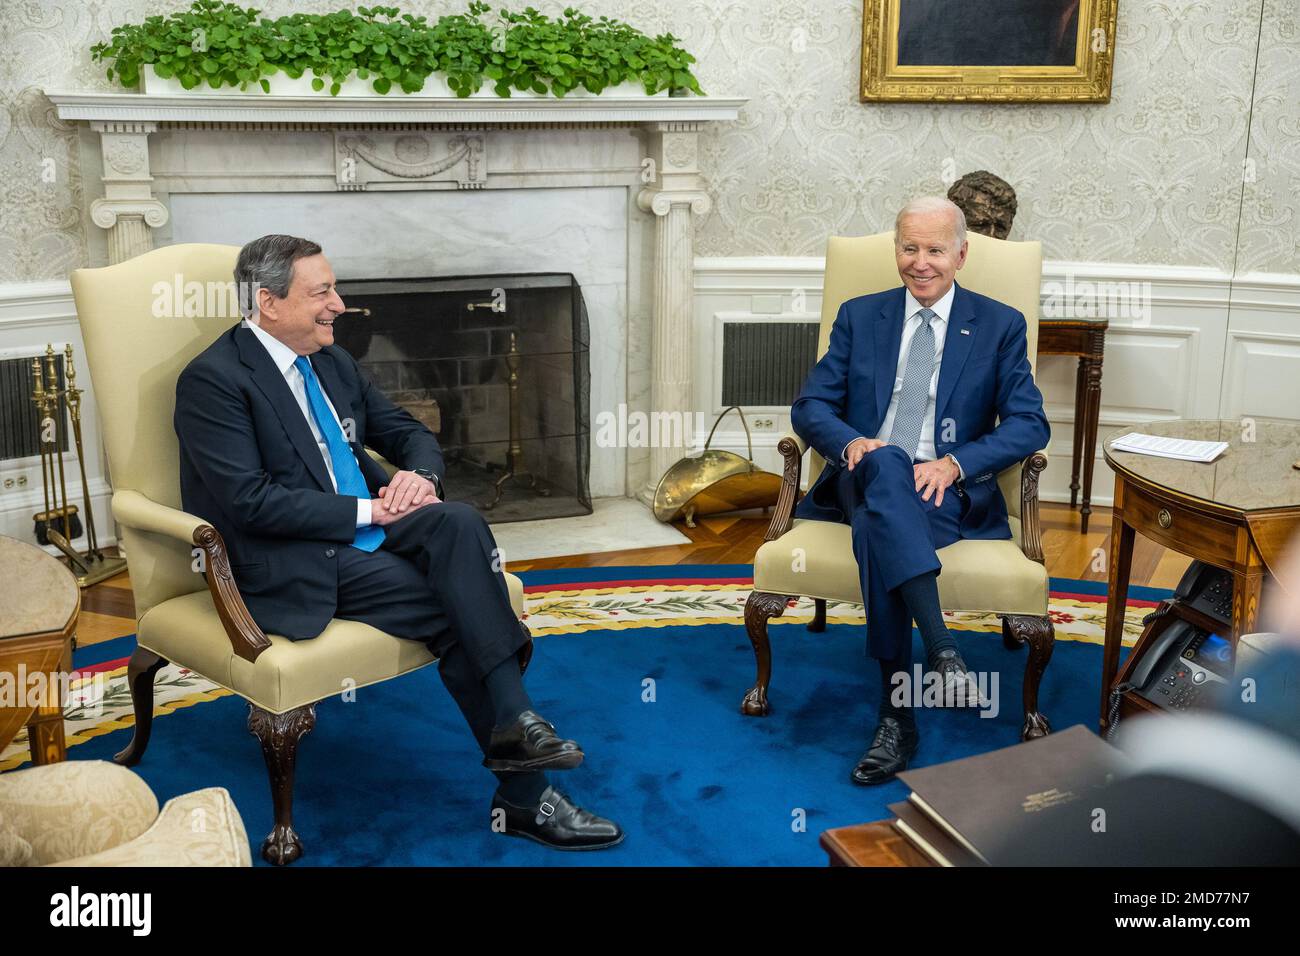 Reportage: Le président Joe Biden rencontre le Premier ministre italien Mario Draghi, mardi, 10 mai 2022, dans le Bureau ovale Banque D'Images